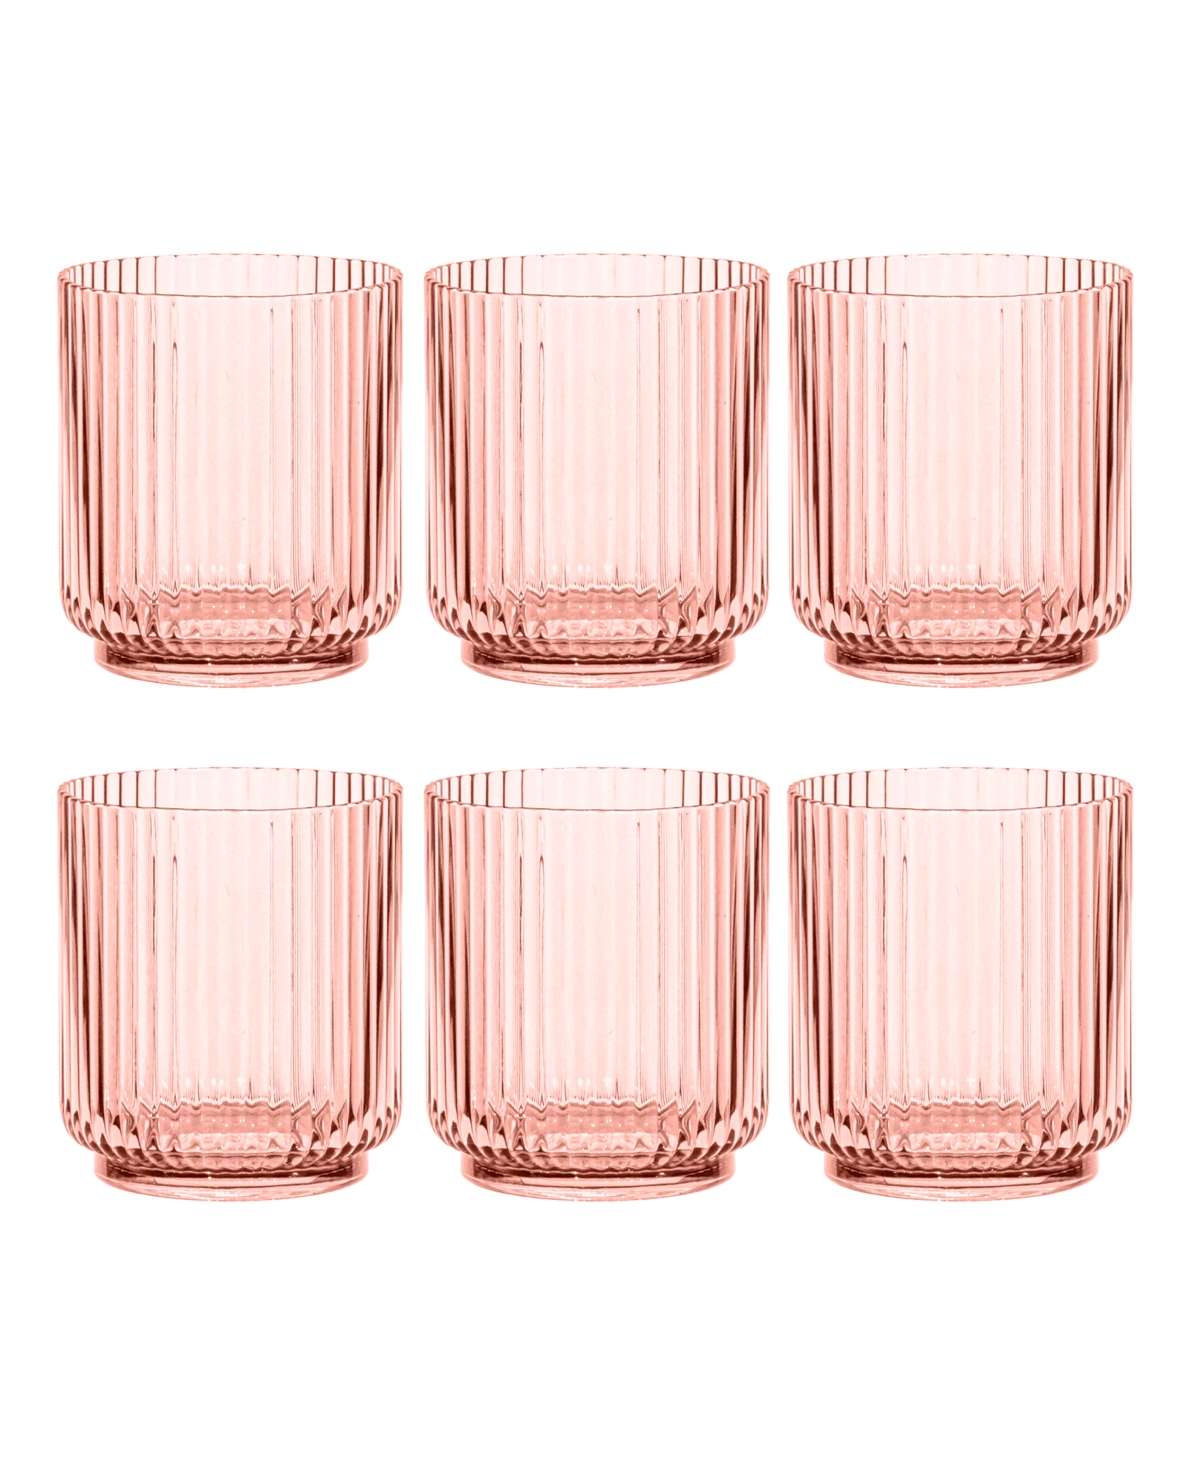 Tarhong Mesa Dof Cobalt Glasses 15 Oz, Set Of 6 In Pink